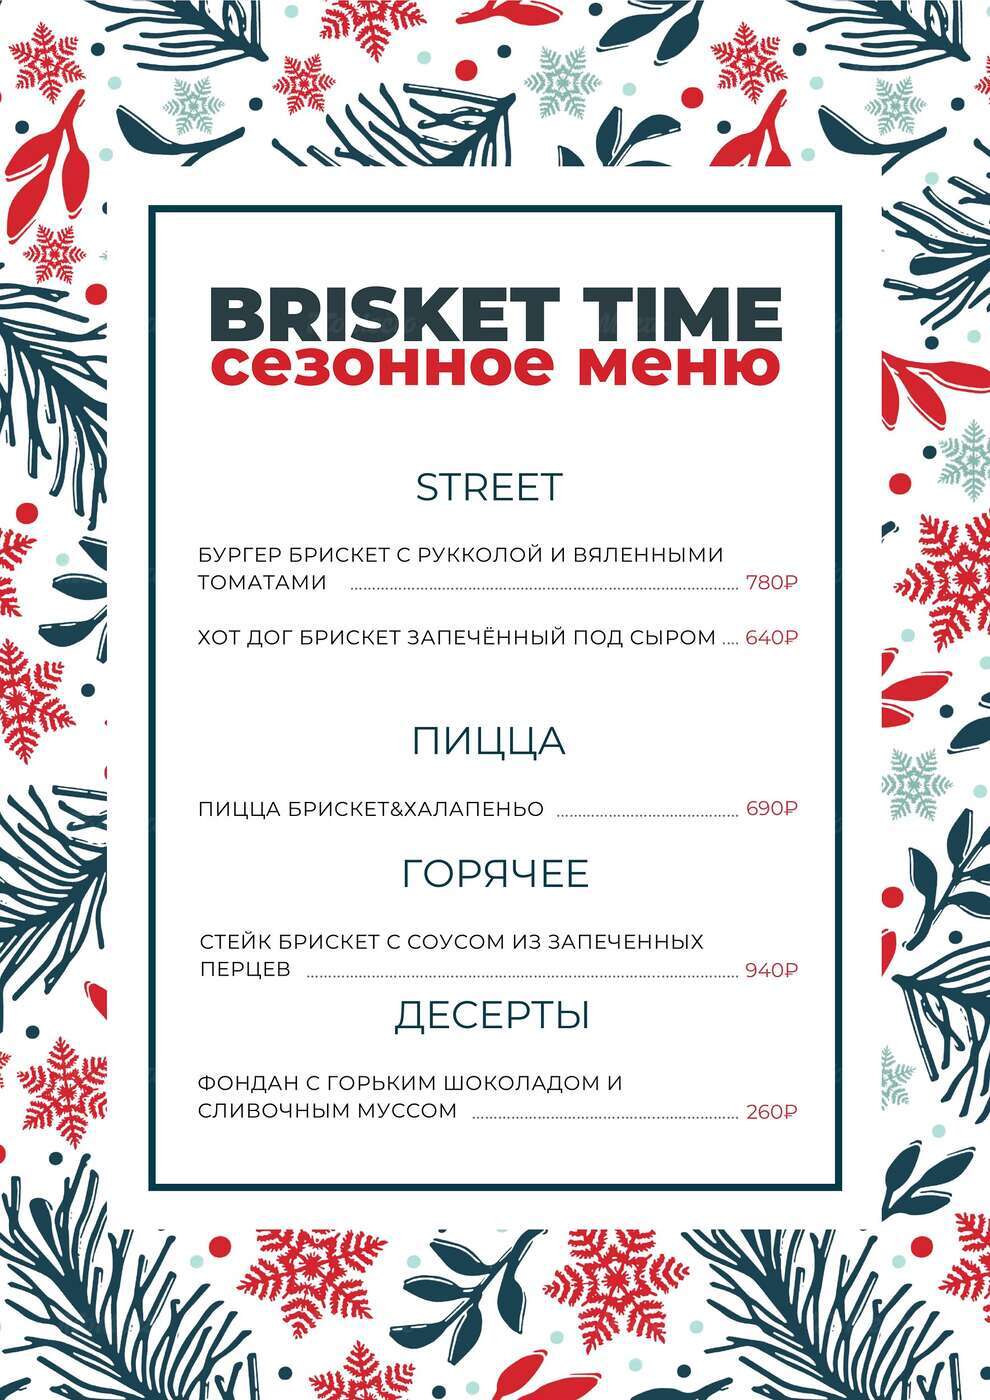 It’s Brisket time! Зимнее меню от ресторанов «Нью-Йорк пицца и гриль»